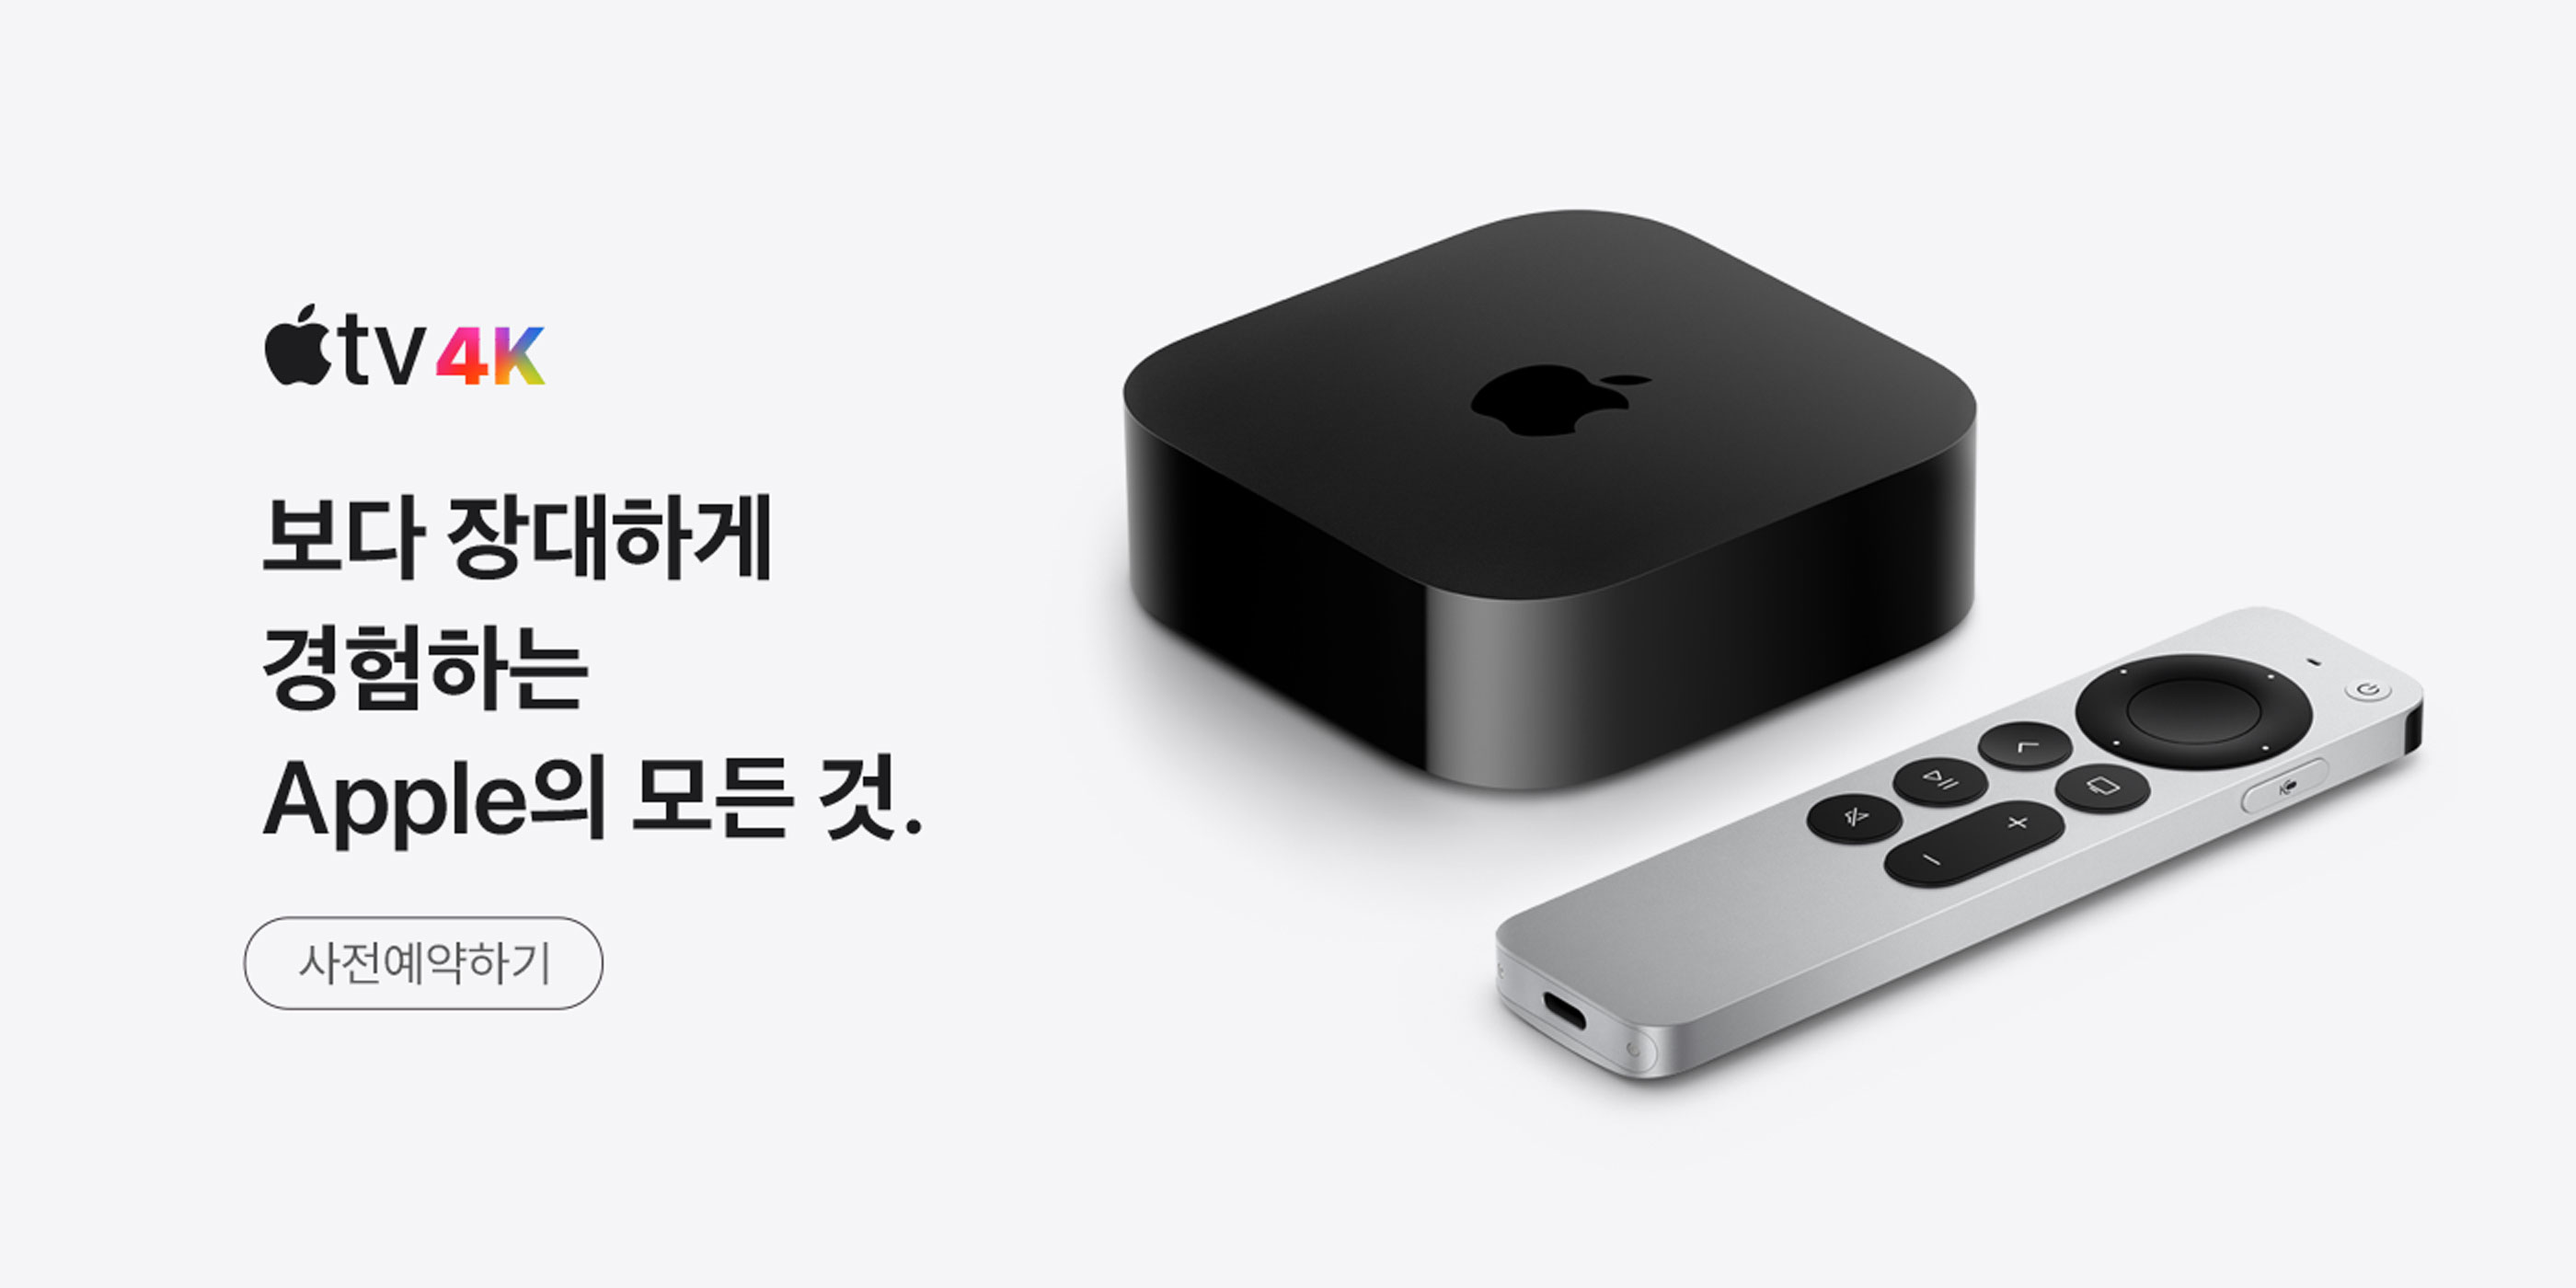 Apple TV 4K 사전예약